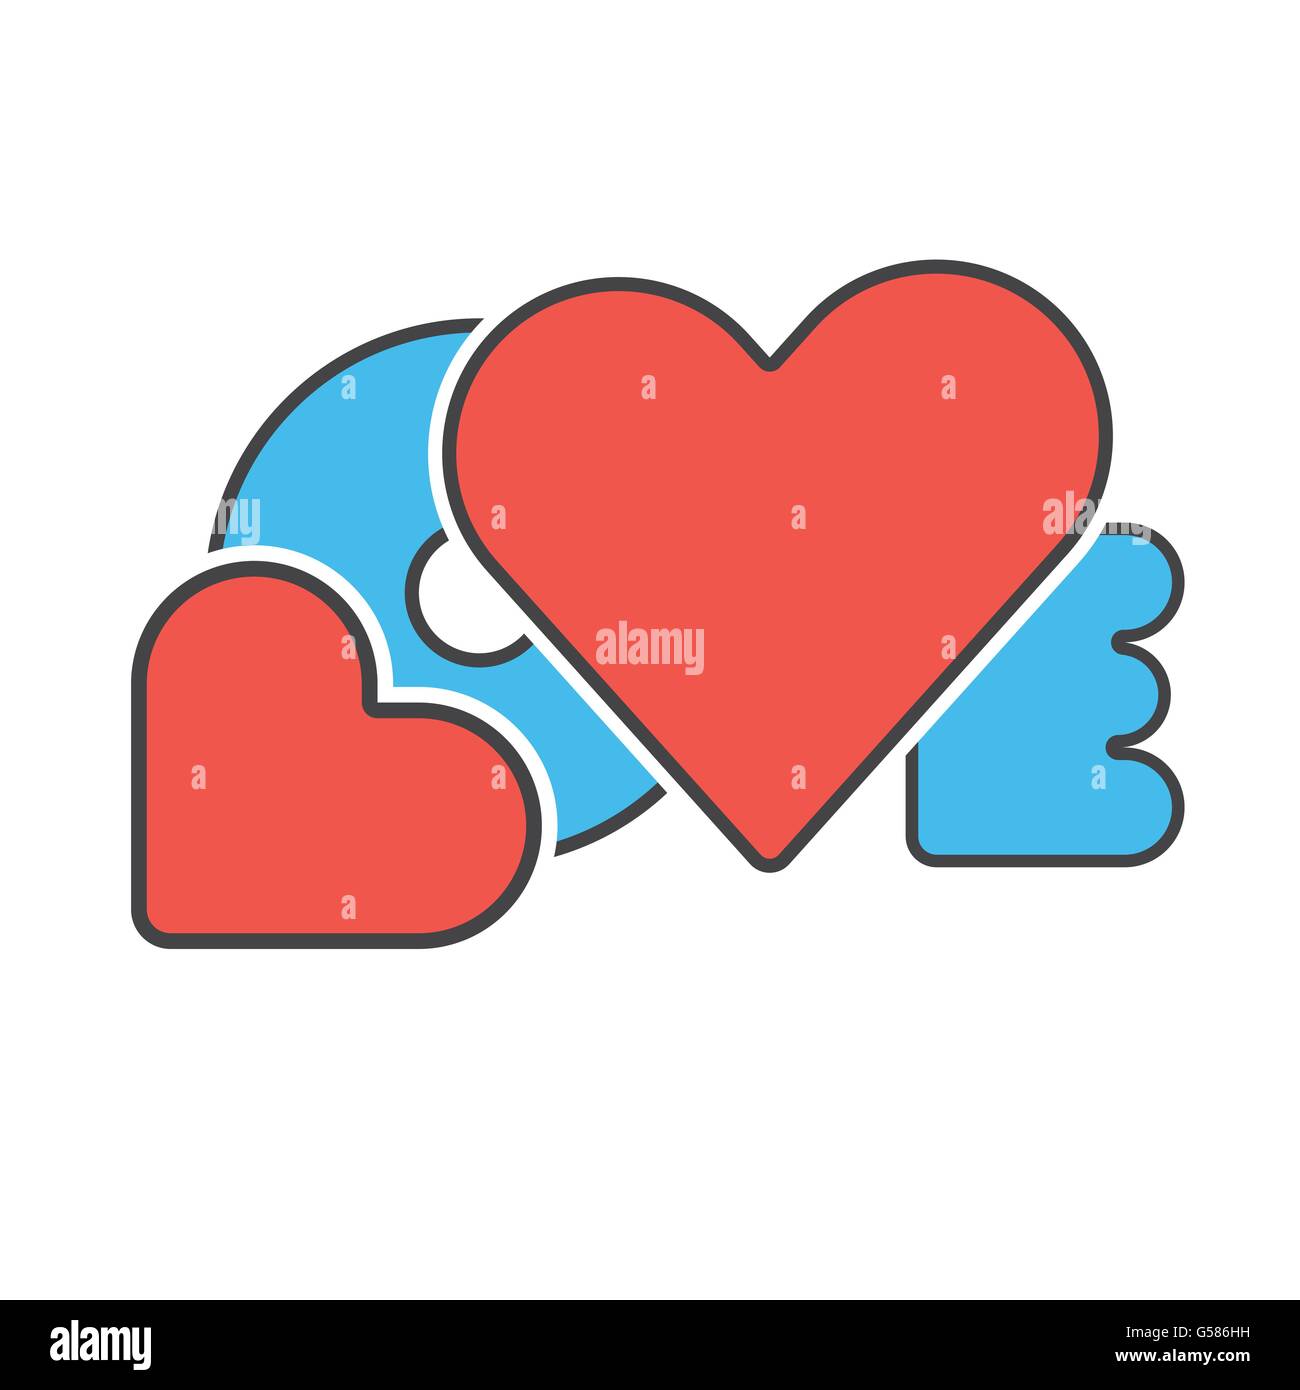 Rosso Blu Colore design creativo parola amore con il cuore simbolo del concetto di amore illustrazione vettoriale Illustrazione Vettoriale